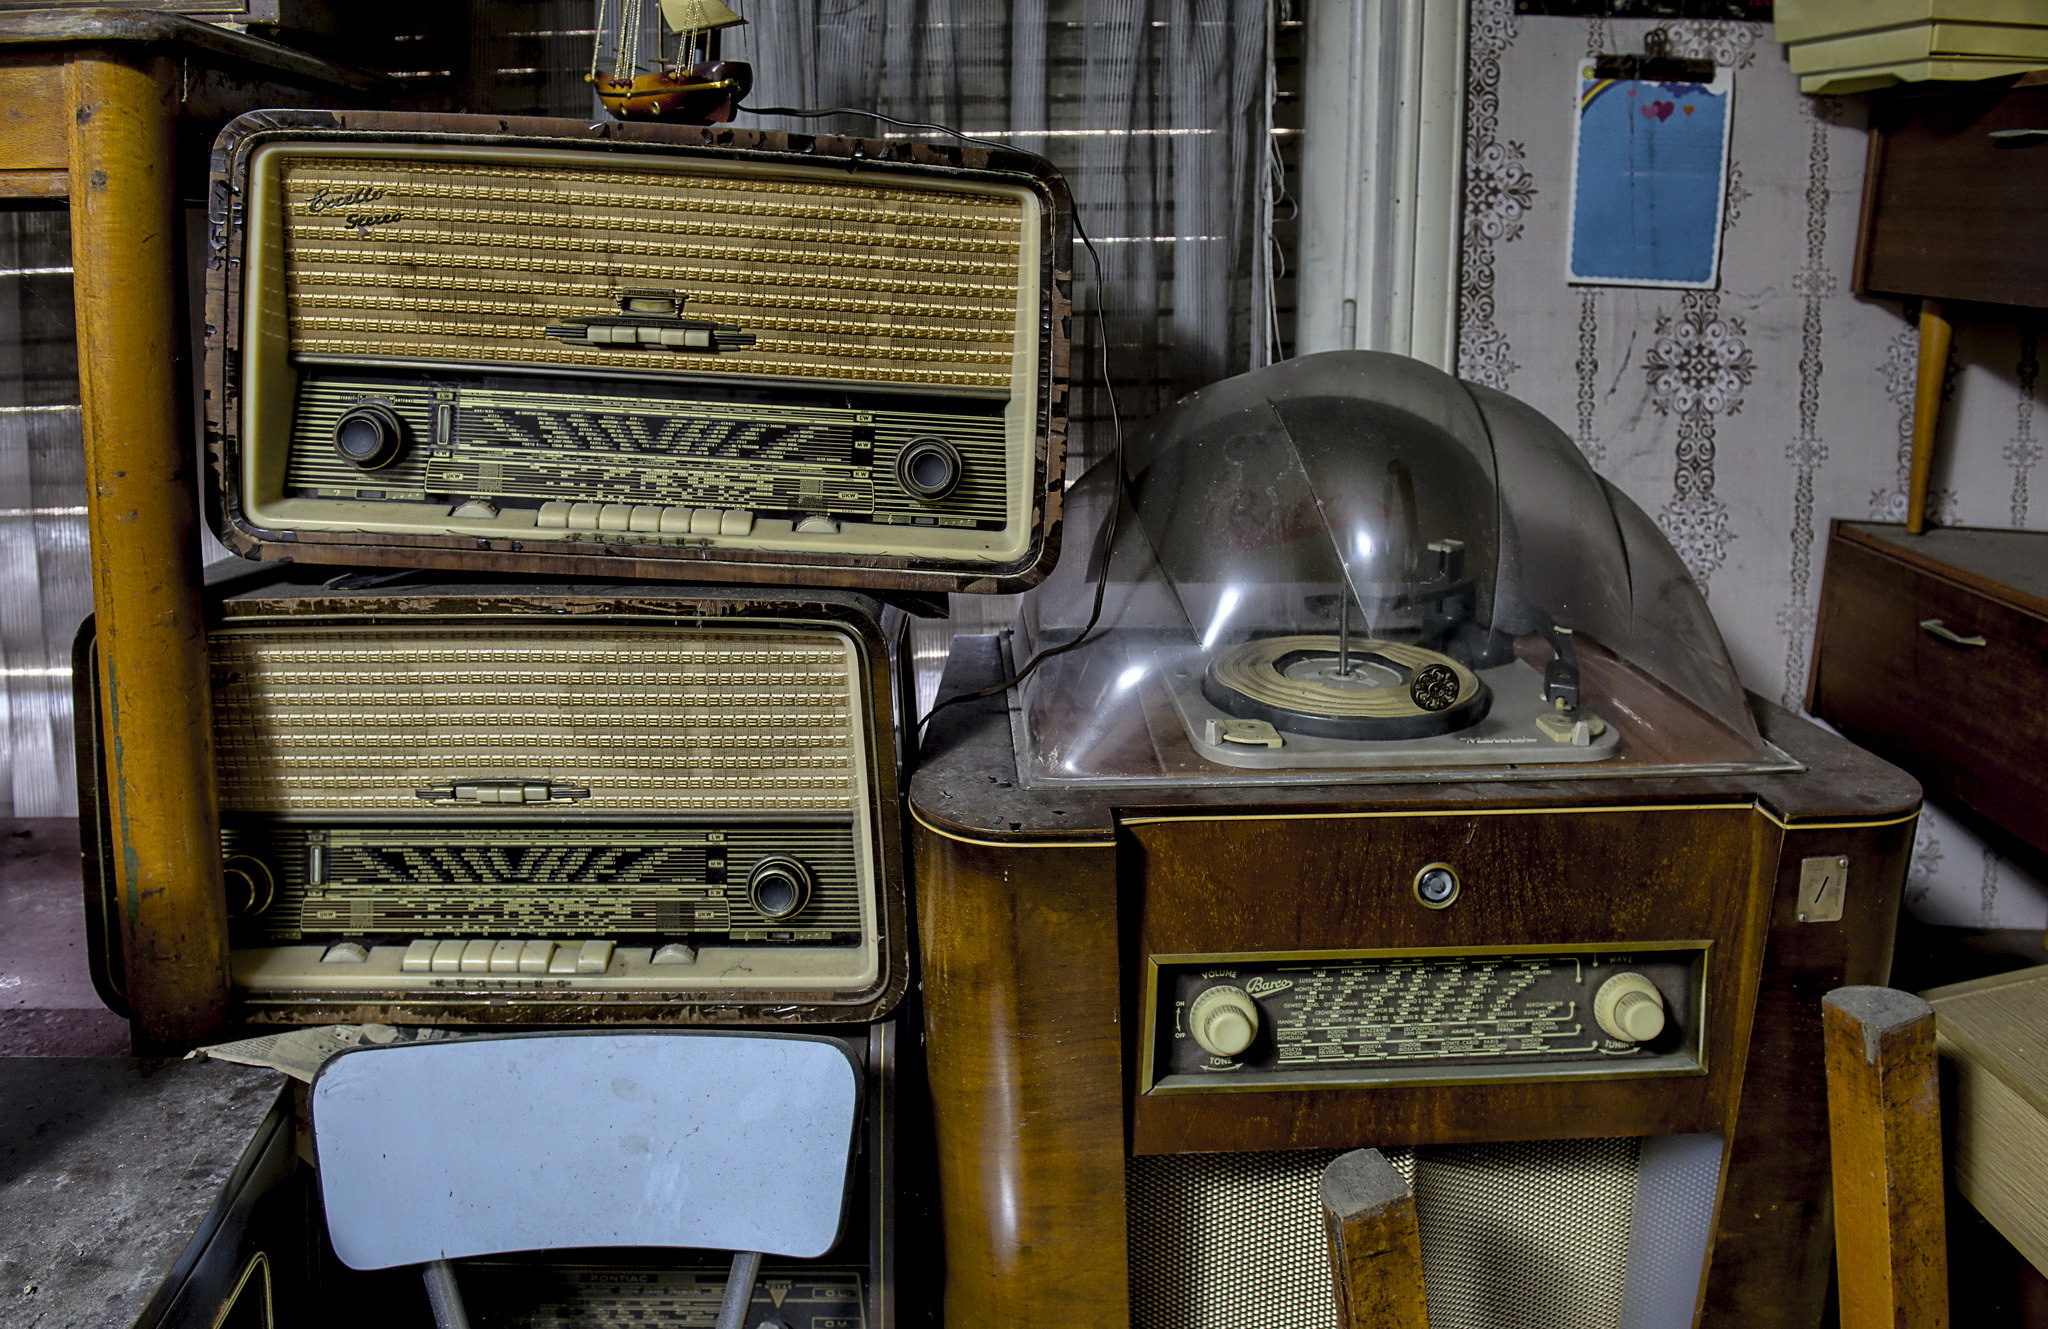 Сайт старое радио. Радио фон. Радиоприемник бирюзовый. Радио из детства.